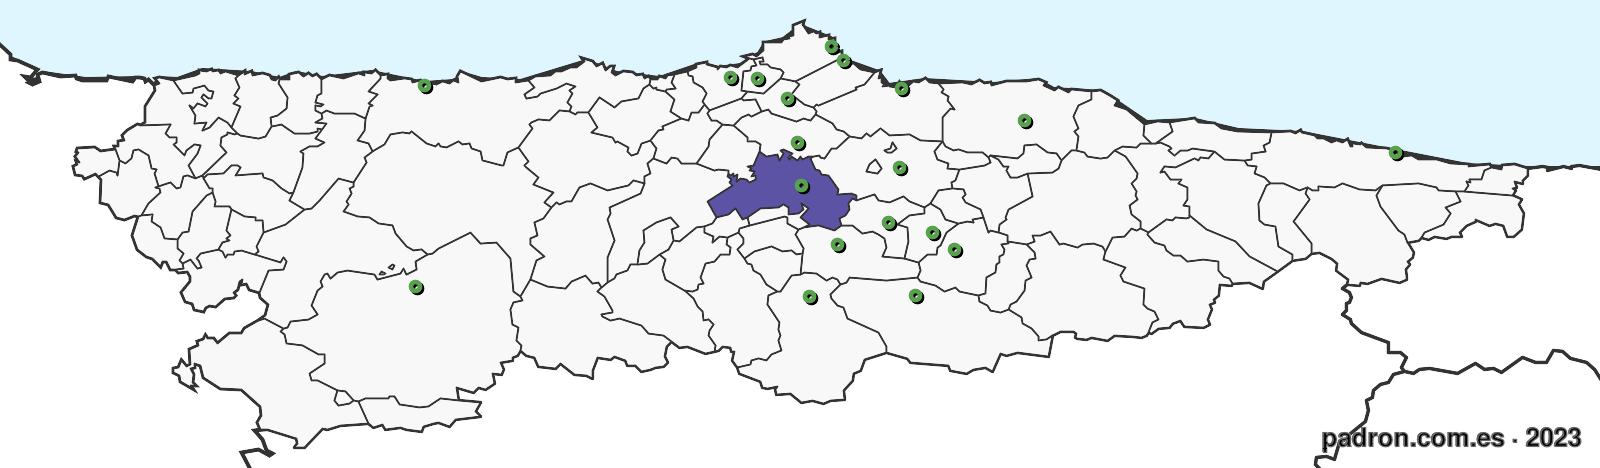 kirguisos en asturias.